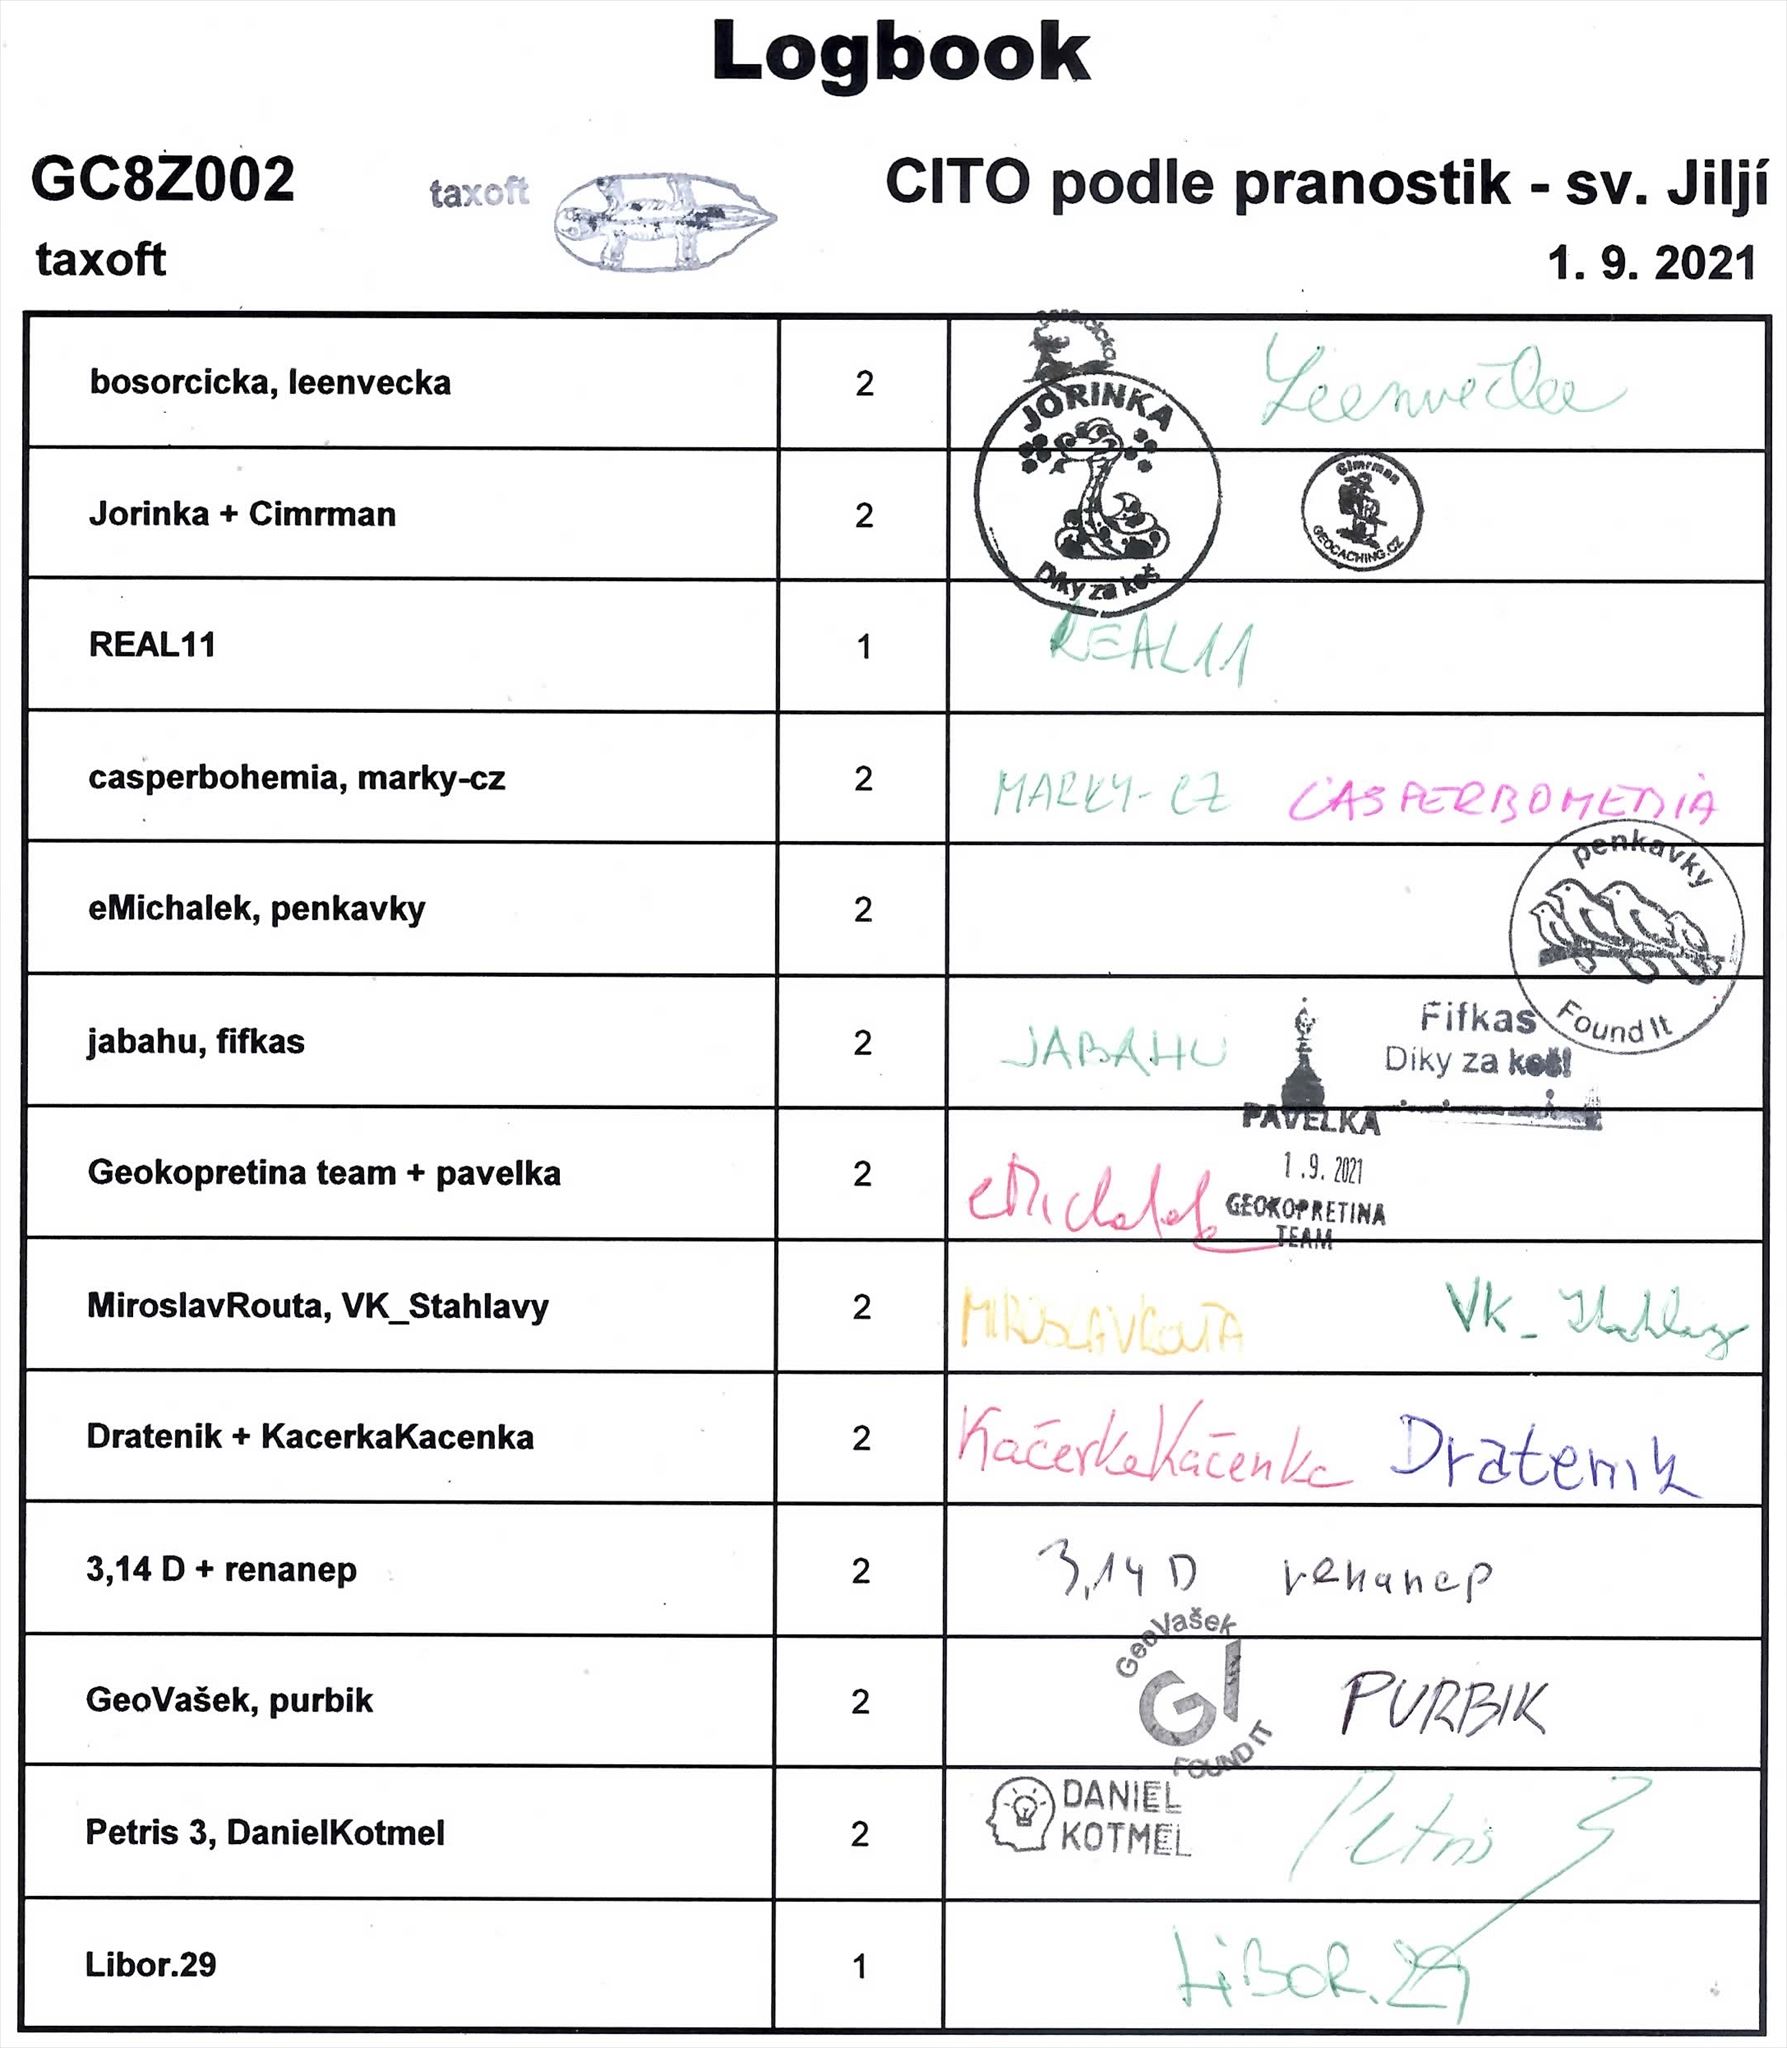 GC8Z002 - CITO dle pranostik - sv. Jiljí - logbook